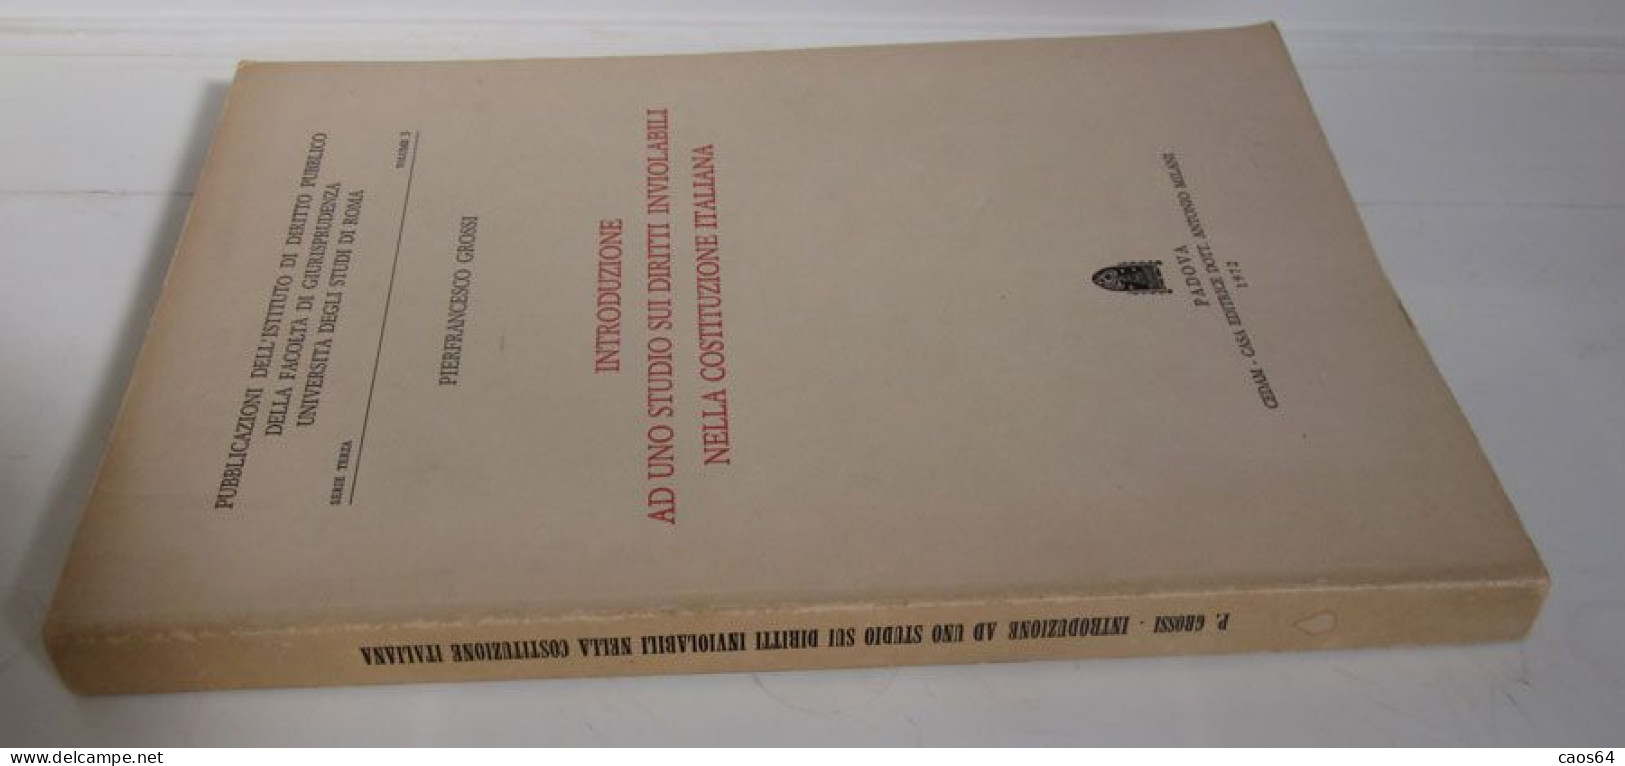 Introduzione Ad Uno Studio Sui Diritti Inviolabili Nella Costituzione Italiana 1972 Pierfrancesco Grossi CEDAM - Droit Et économie